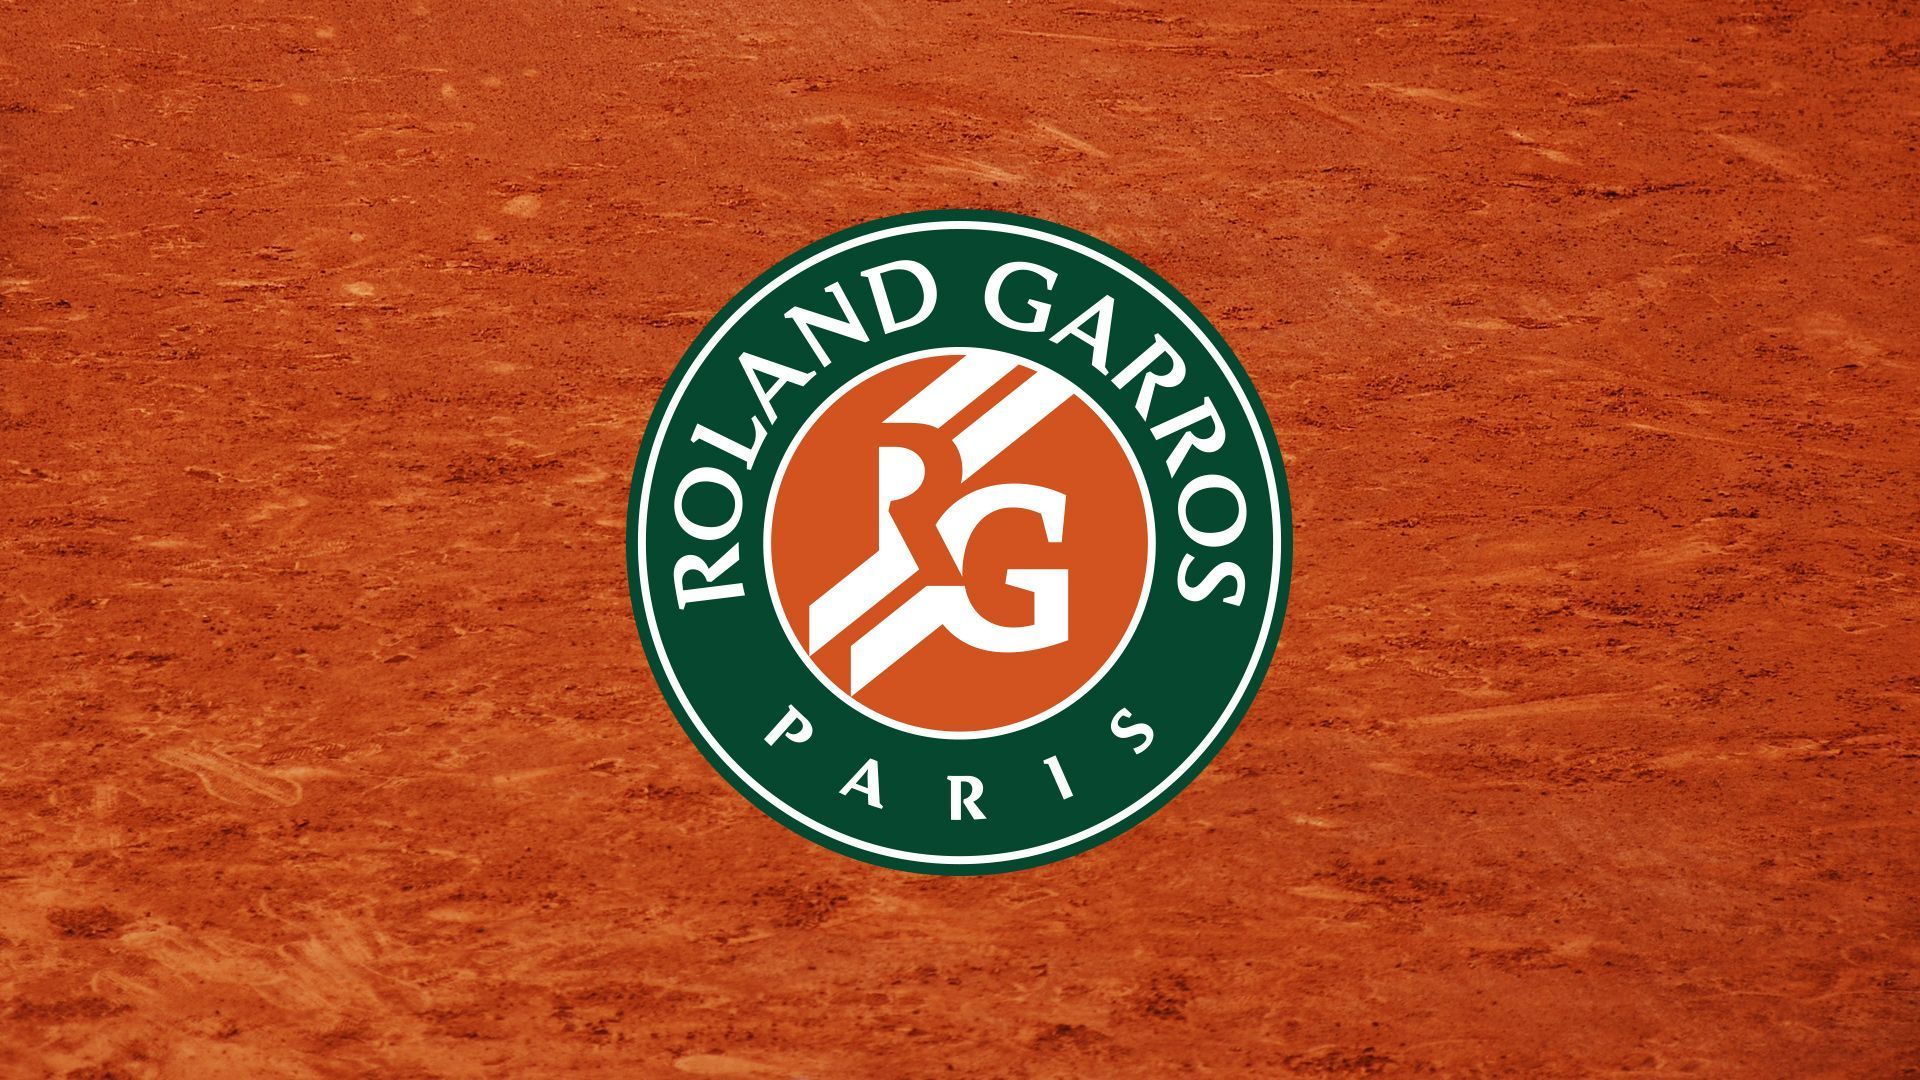 Roland Garros Wallpaper Free Roland Garros Background